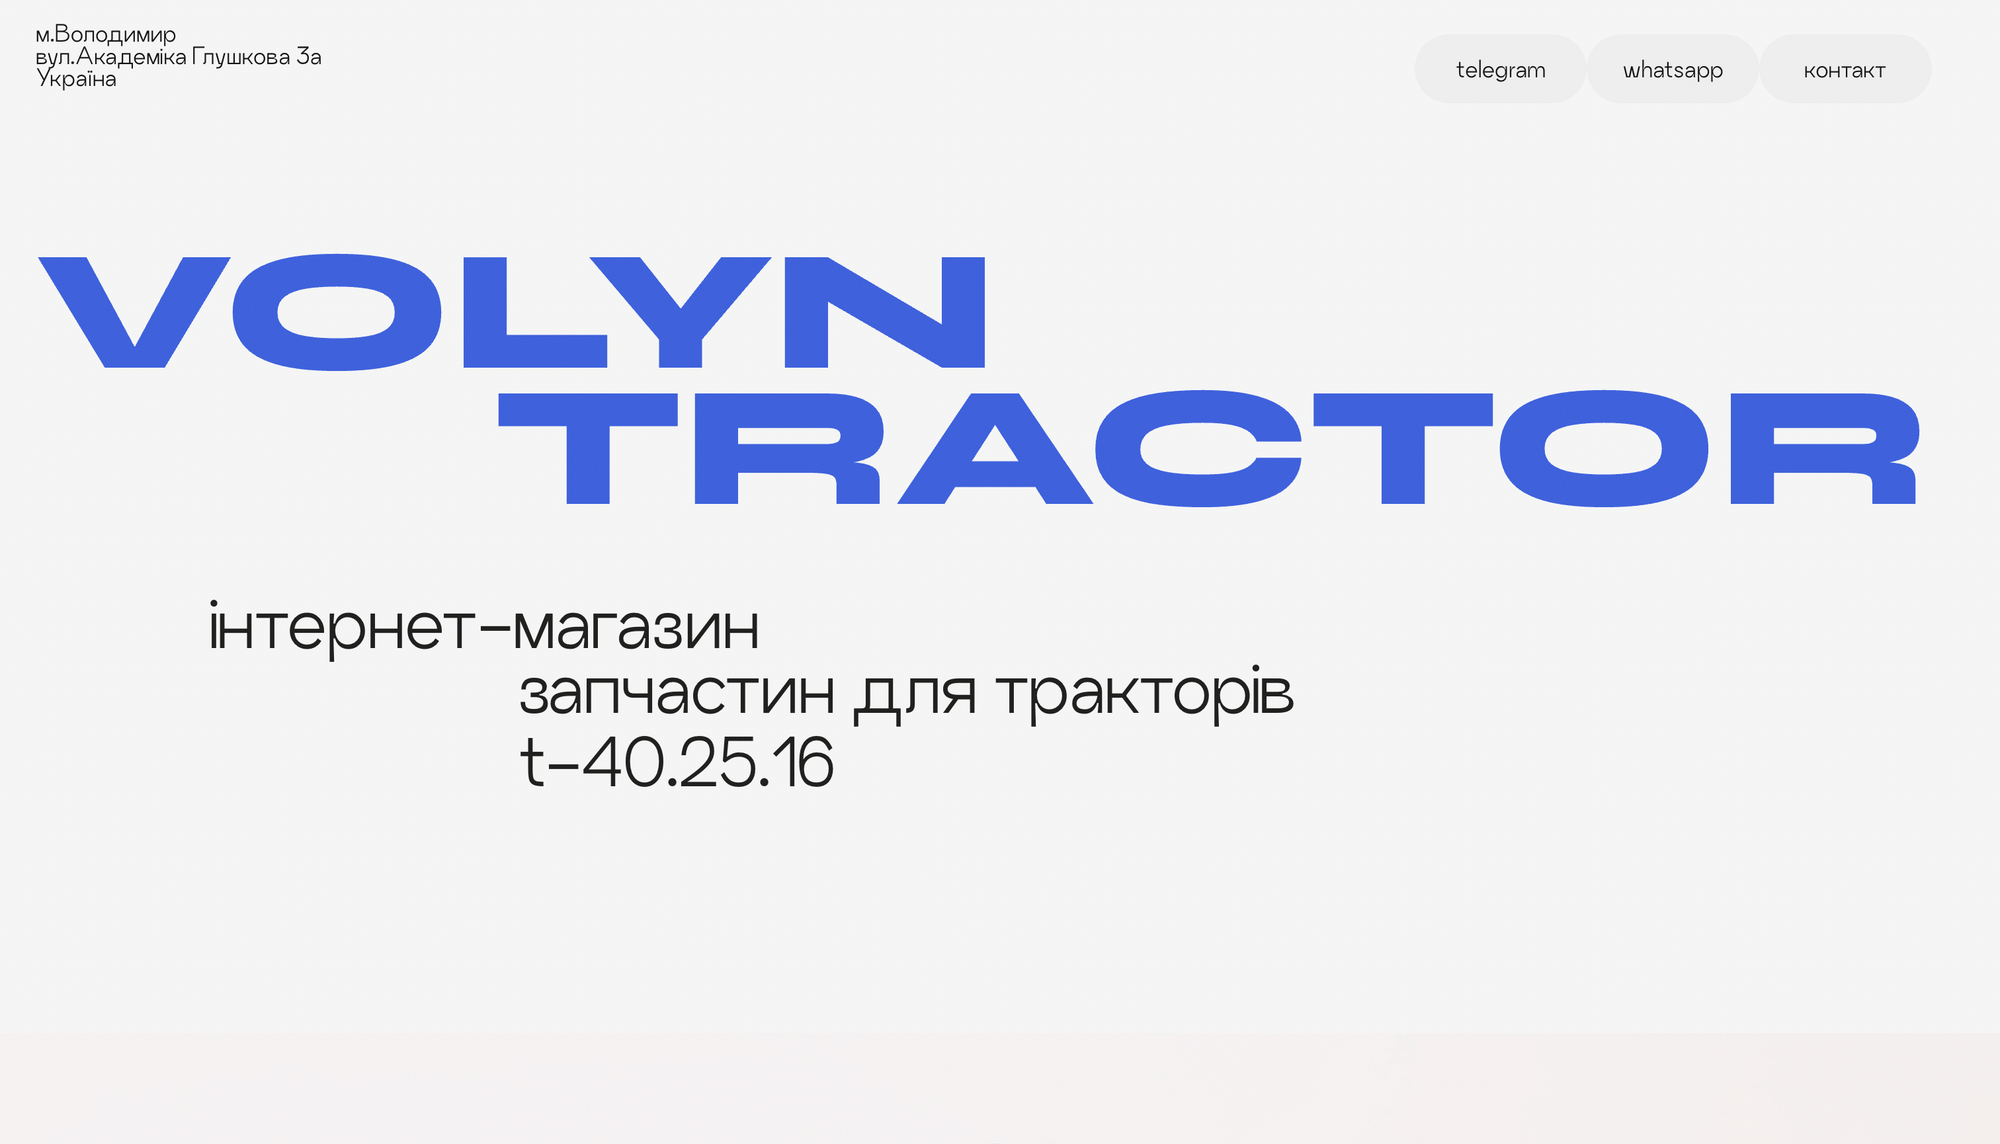 readymag blog_Volyn tractor by Andriy Smolyar